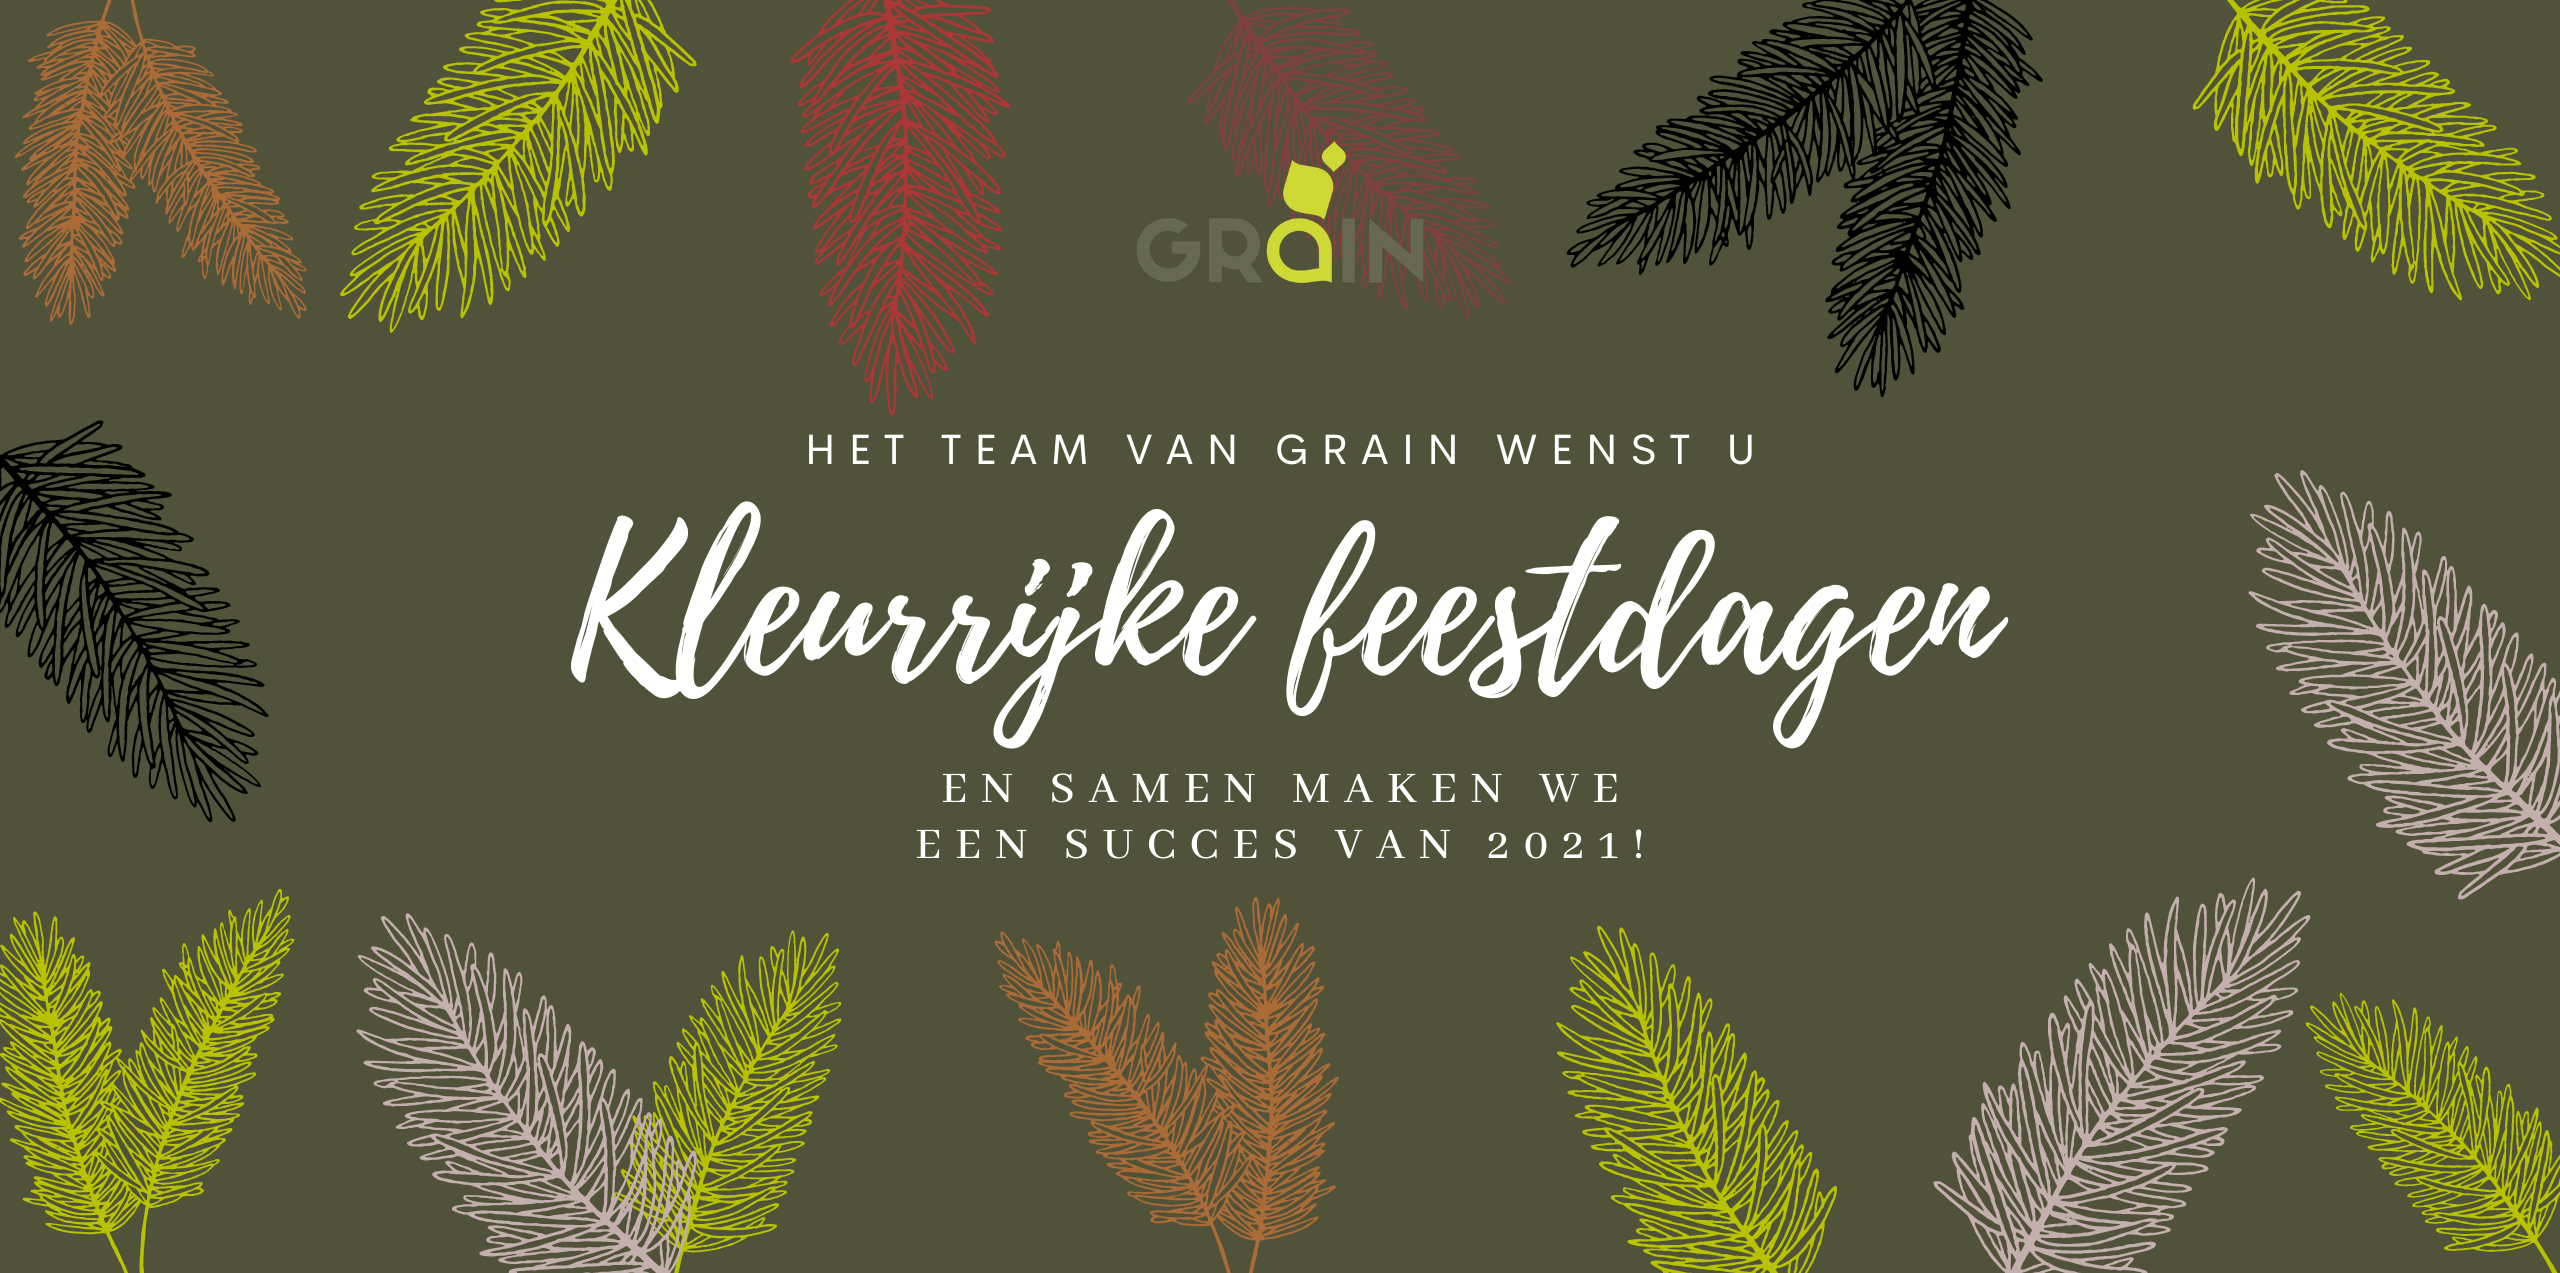 Het team van Grain wenst u kleurrijke feestdagen, en samen maken we een succes van 2021!